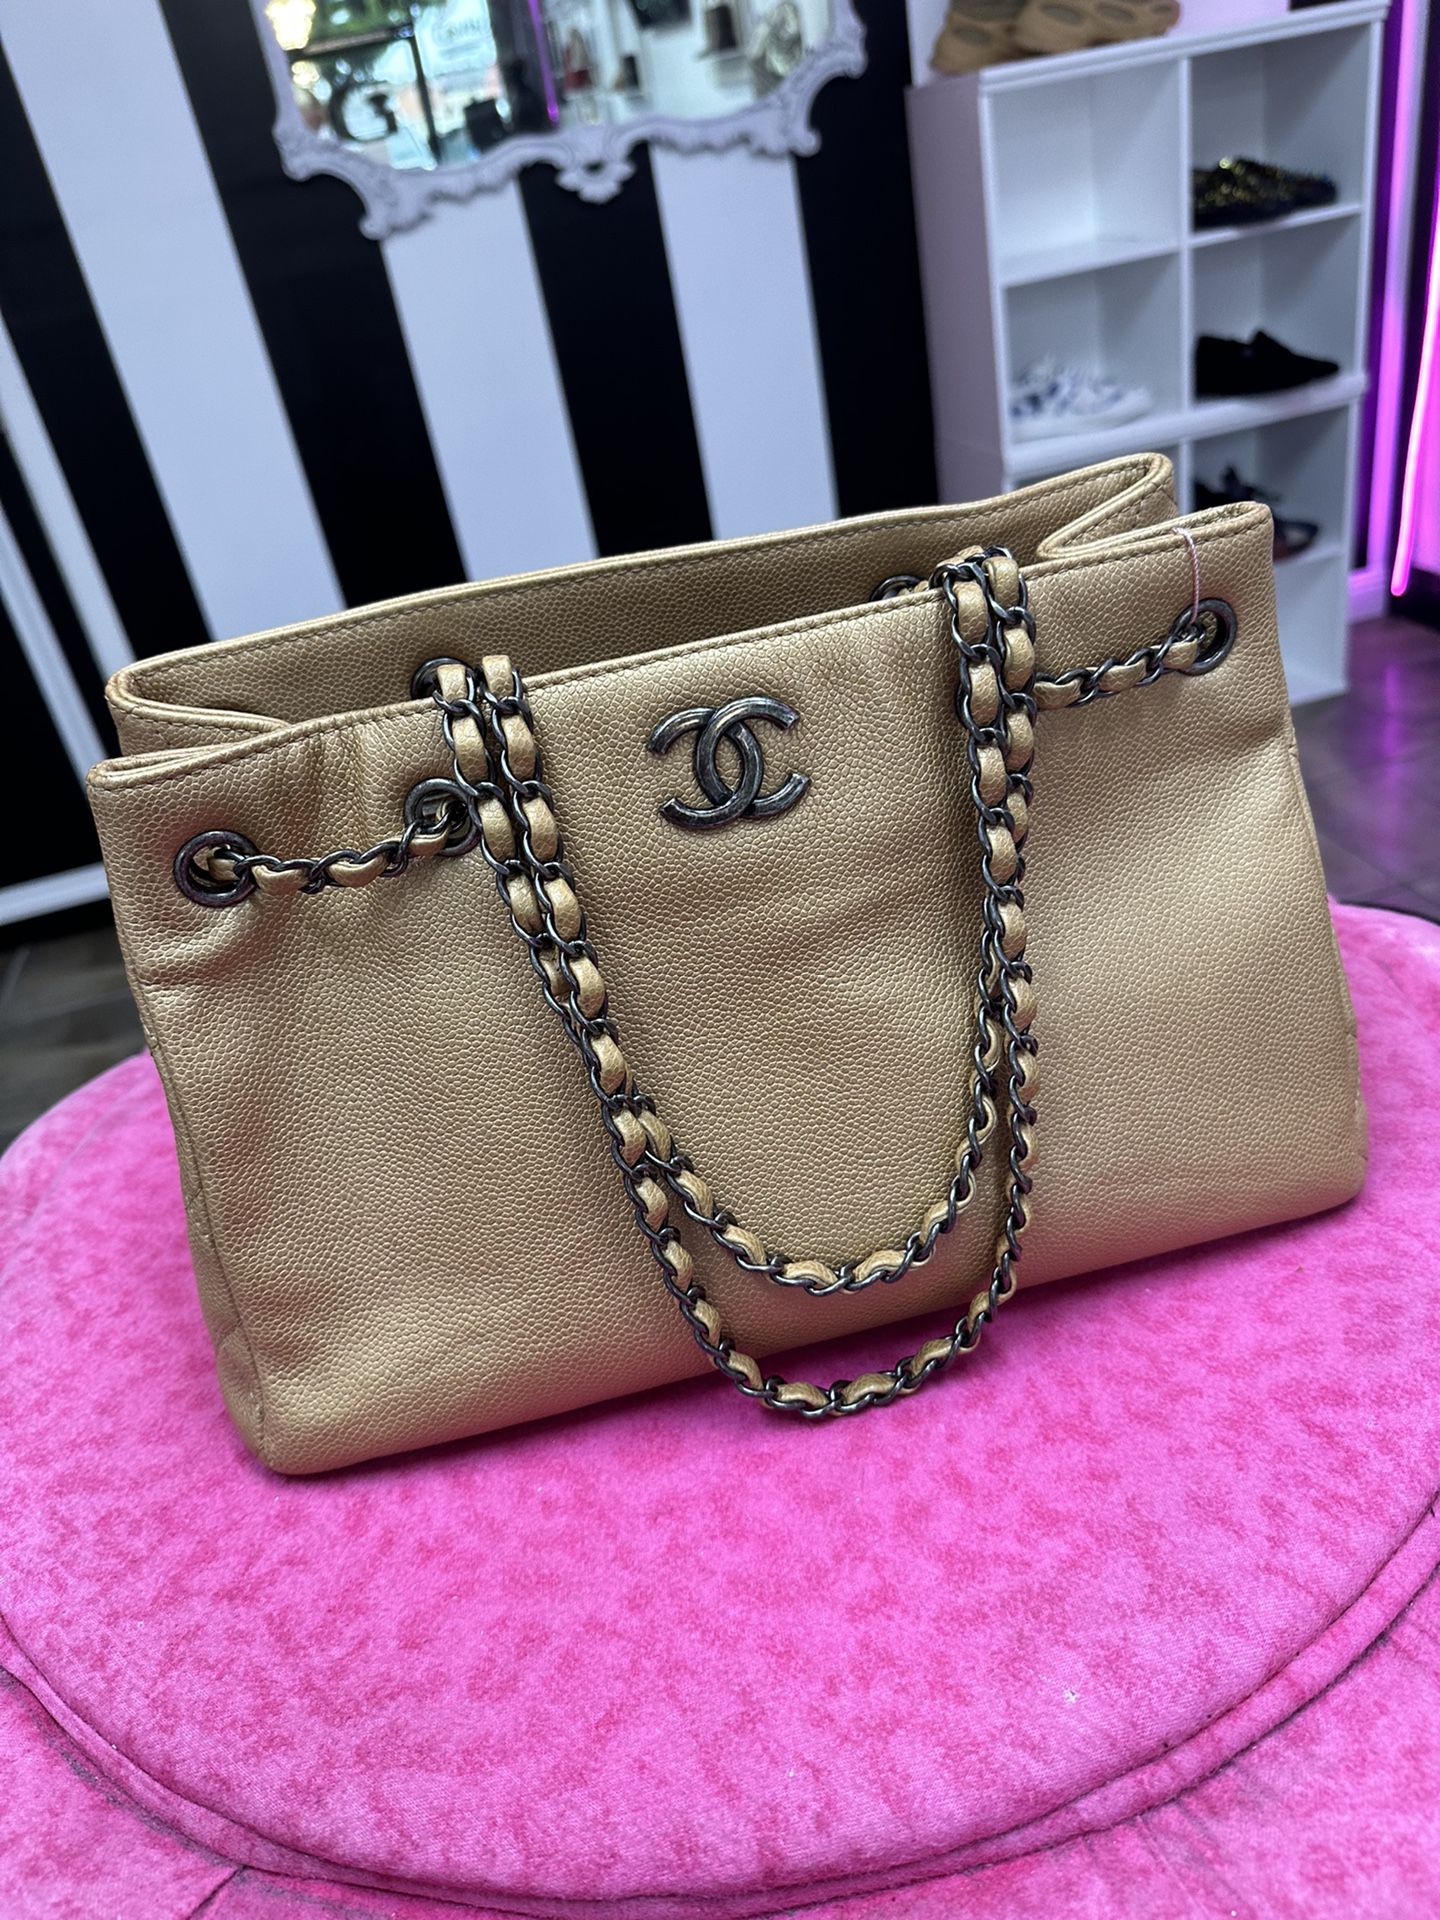 Chanel Tote Bag 